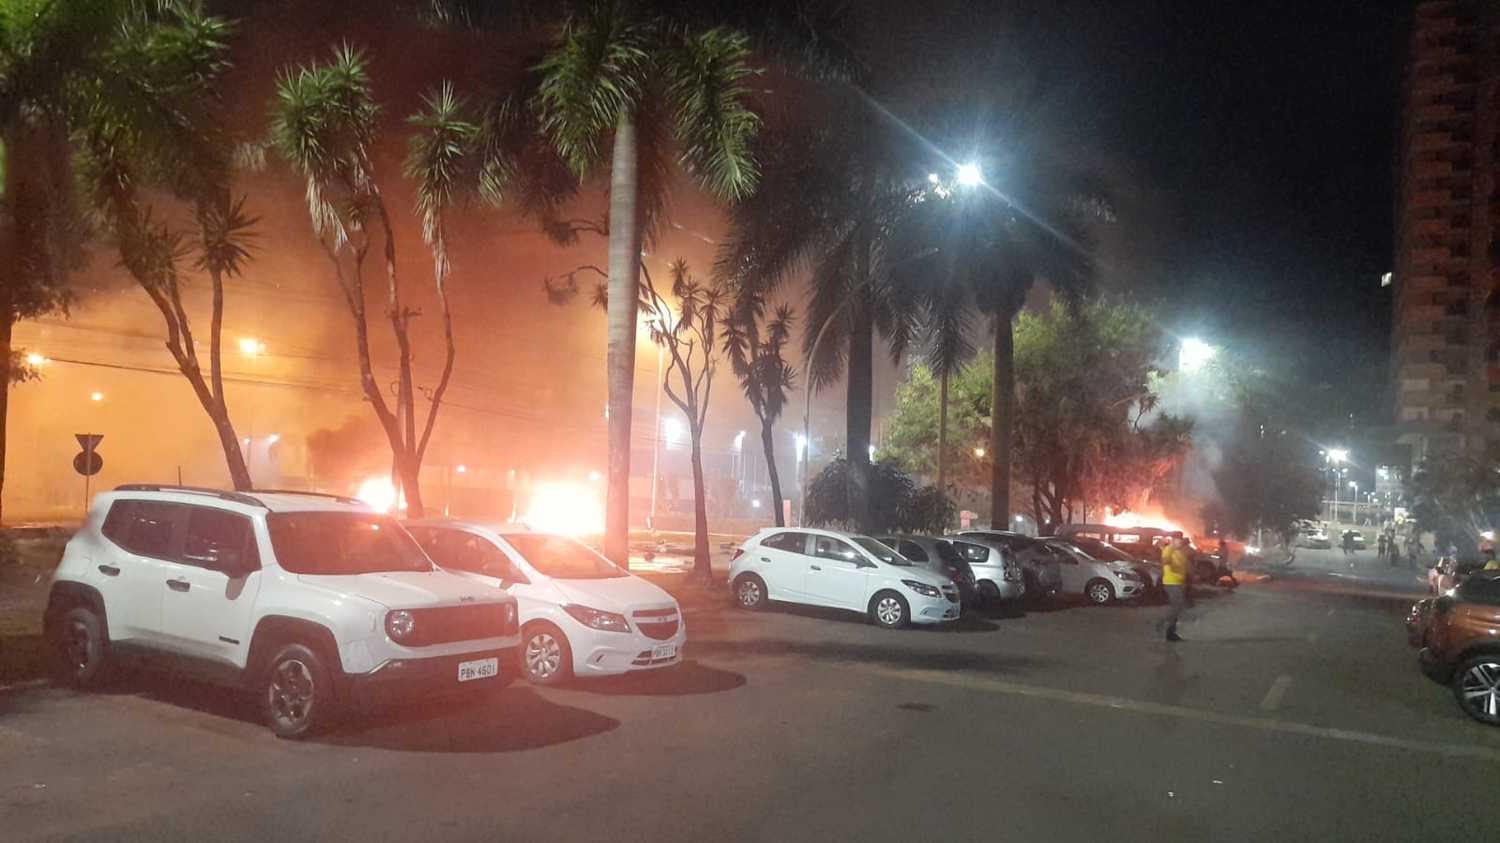 Manifestantes ateiam fogo em carros e ônibus e tentam invadir sede da  Polícia Federal em Brasília - Notícias - R7 Brasília